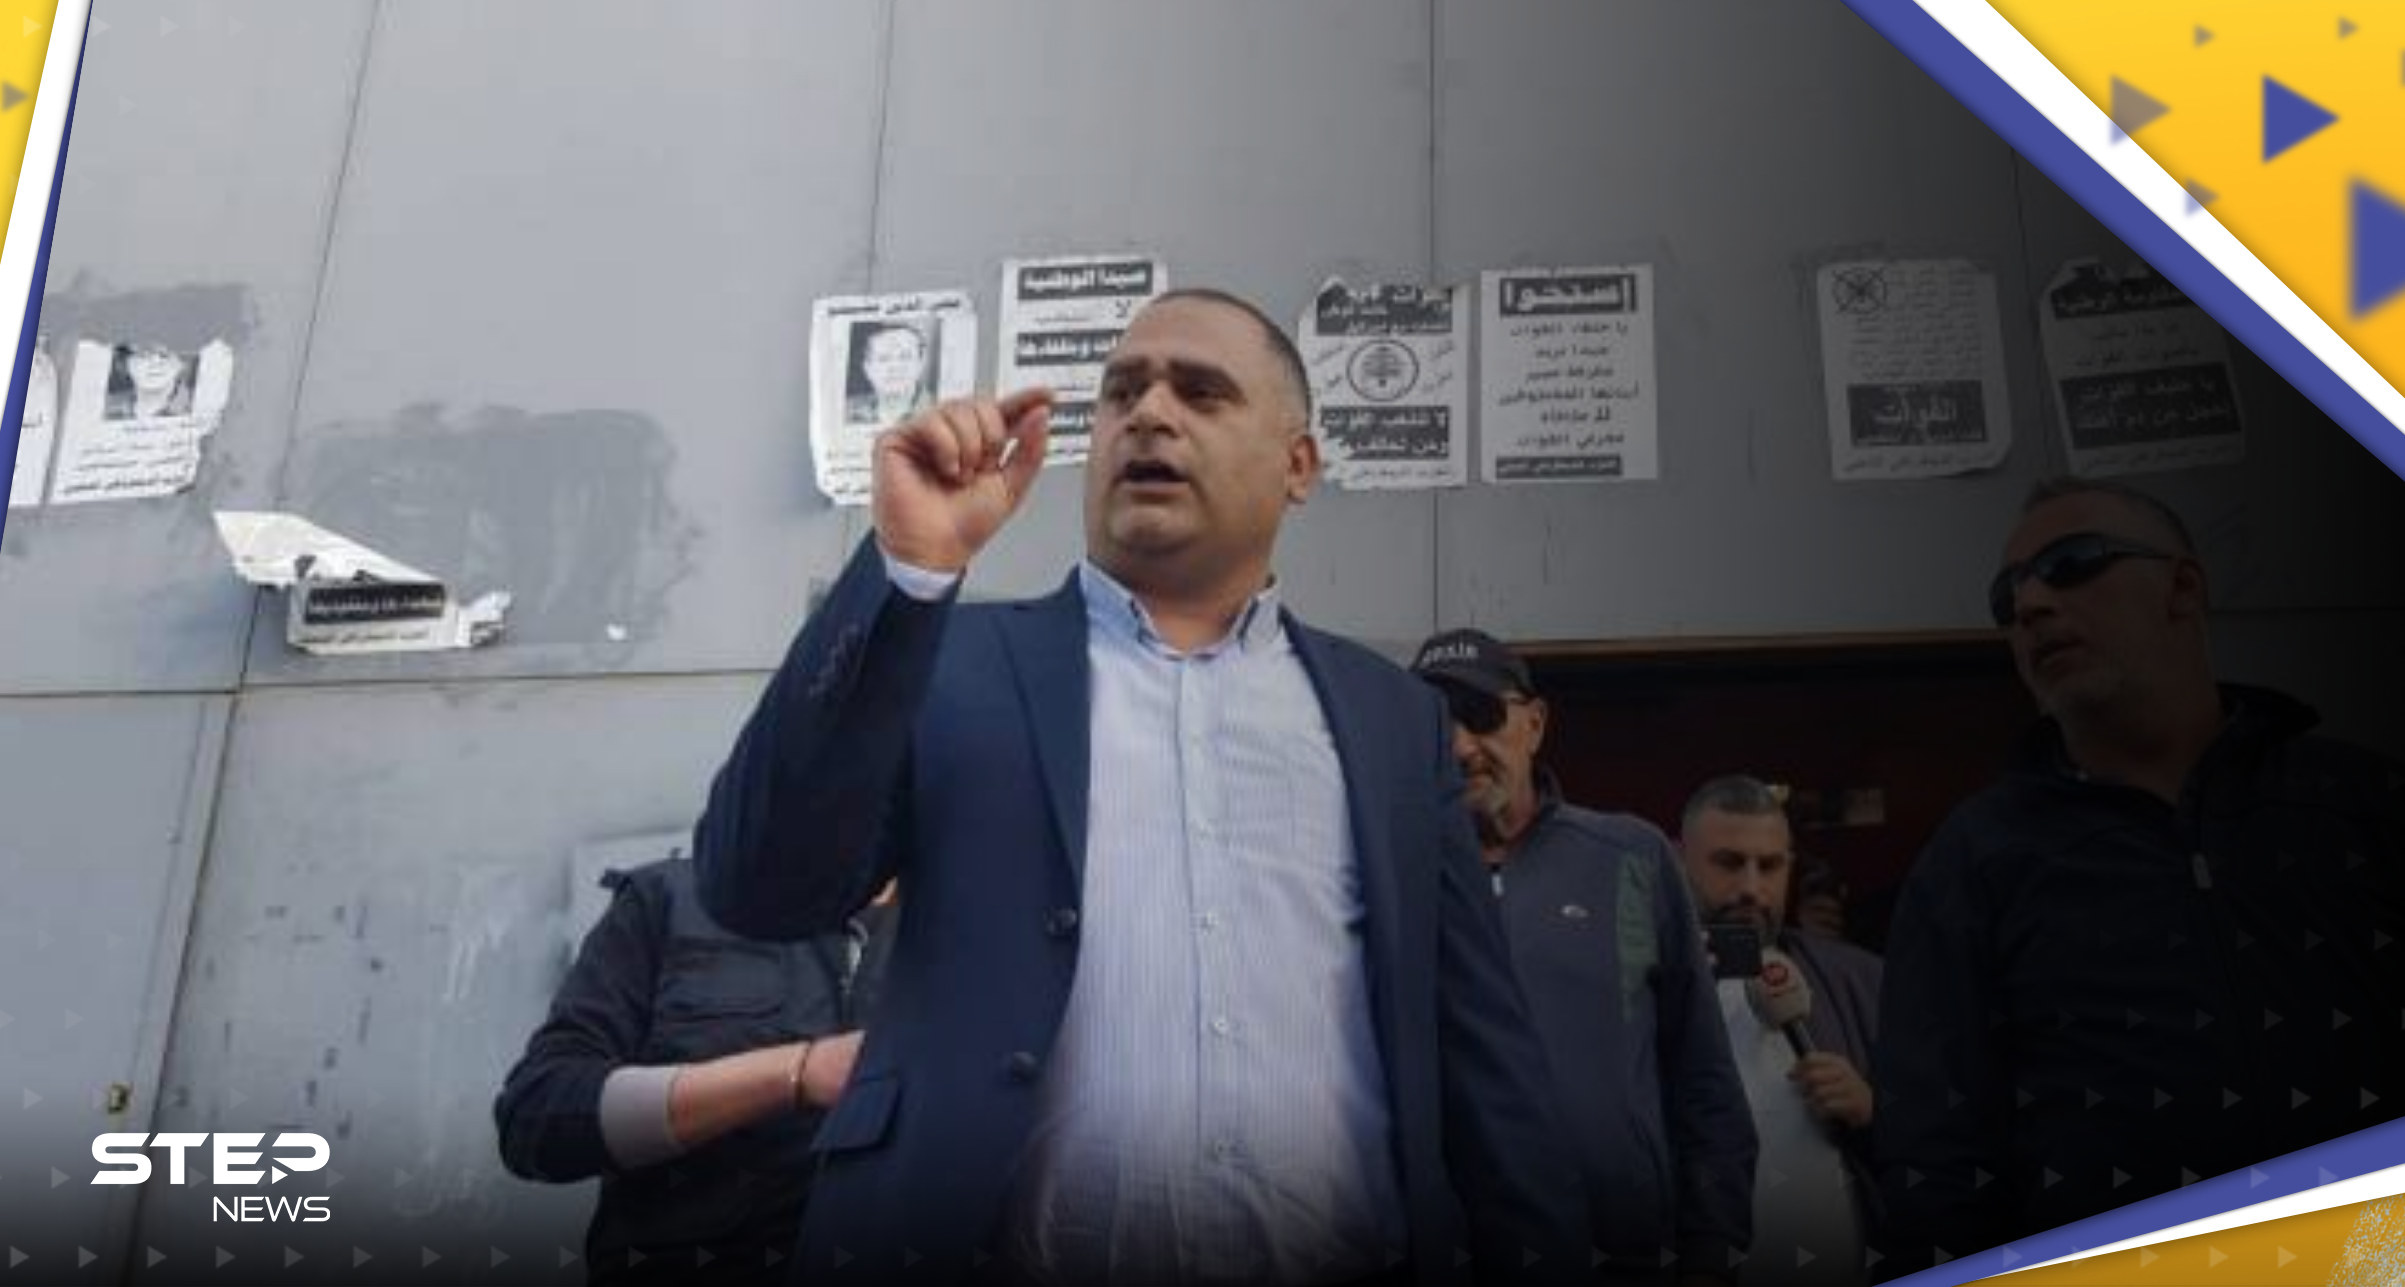 مسؤول لبناني يقتحم مصرفاً مطالباً بحل مشكلة "المودعين" ويتوعد بالمزيد (فيديو) 